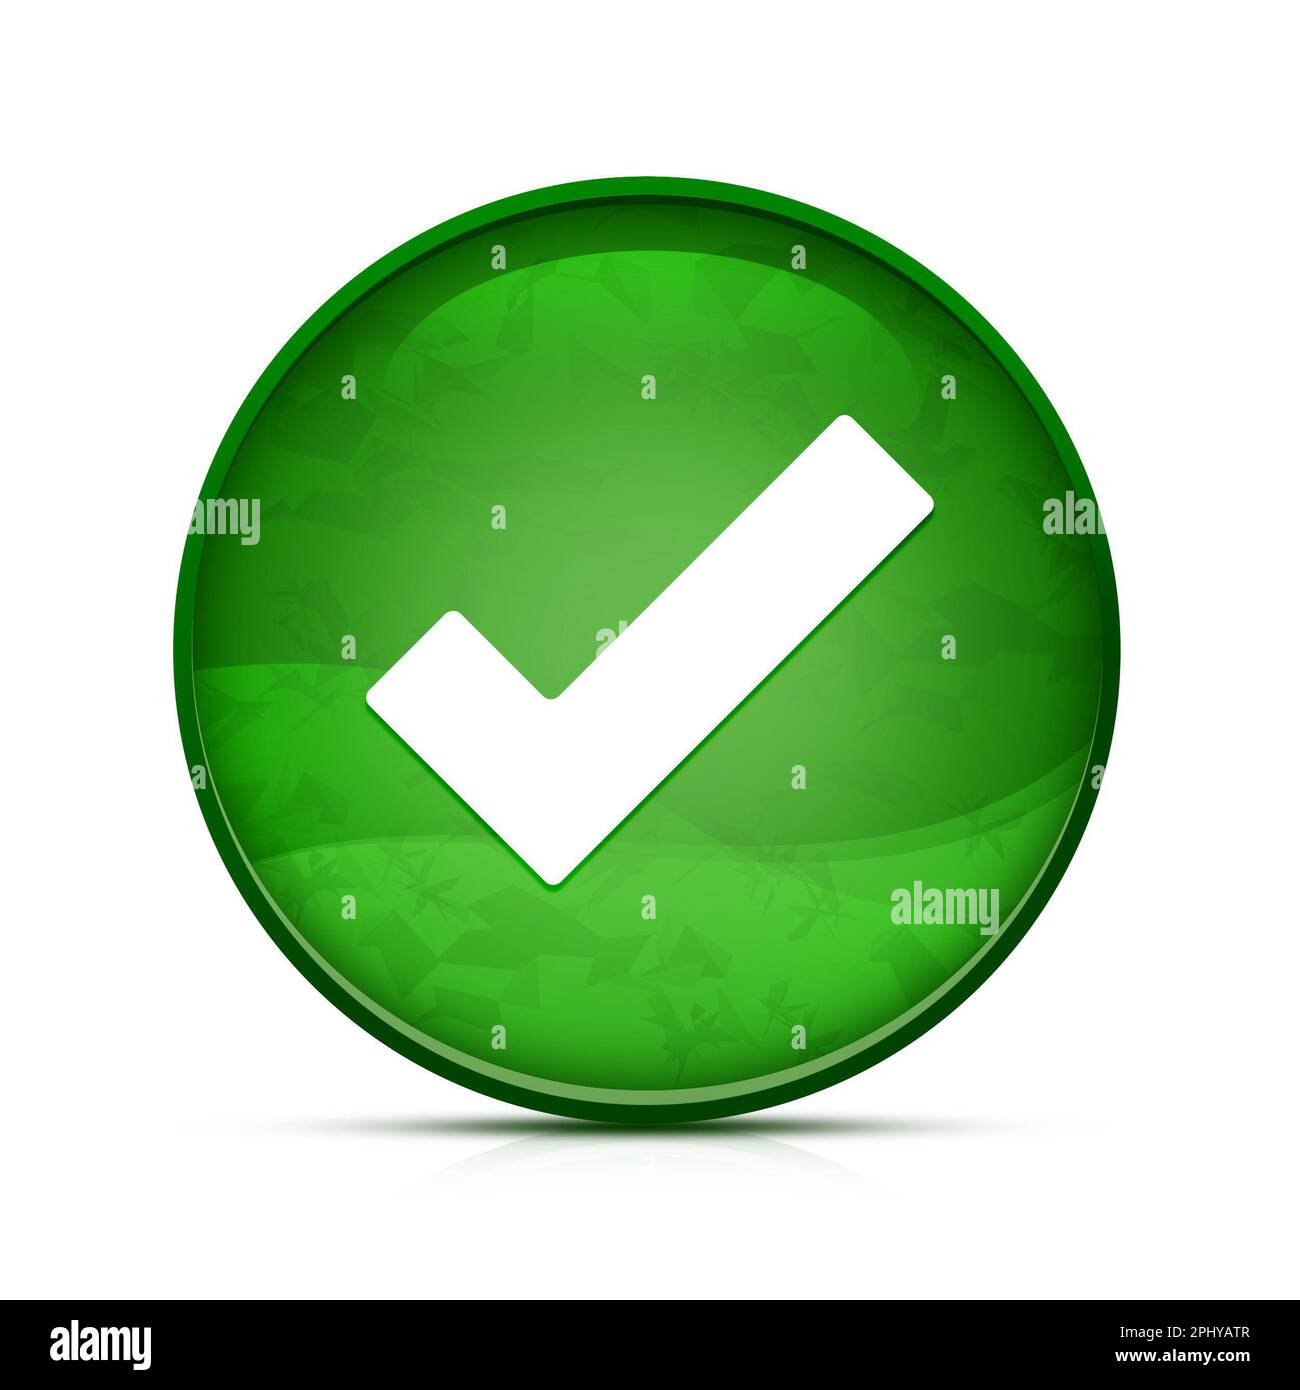 Icona con il segno di spunta sul pulsante rotondo verde classico Foto Stock